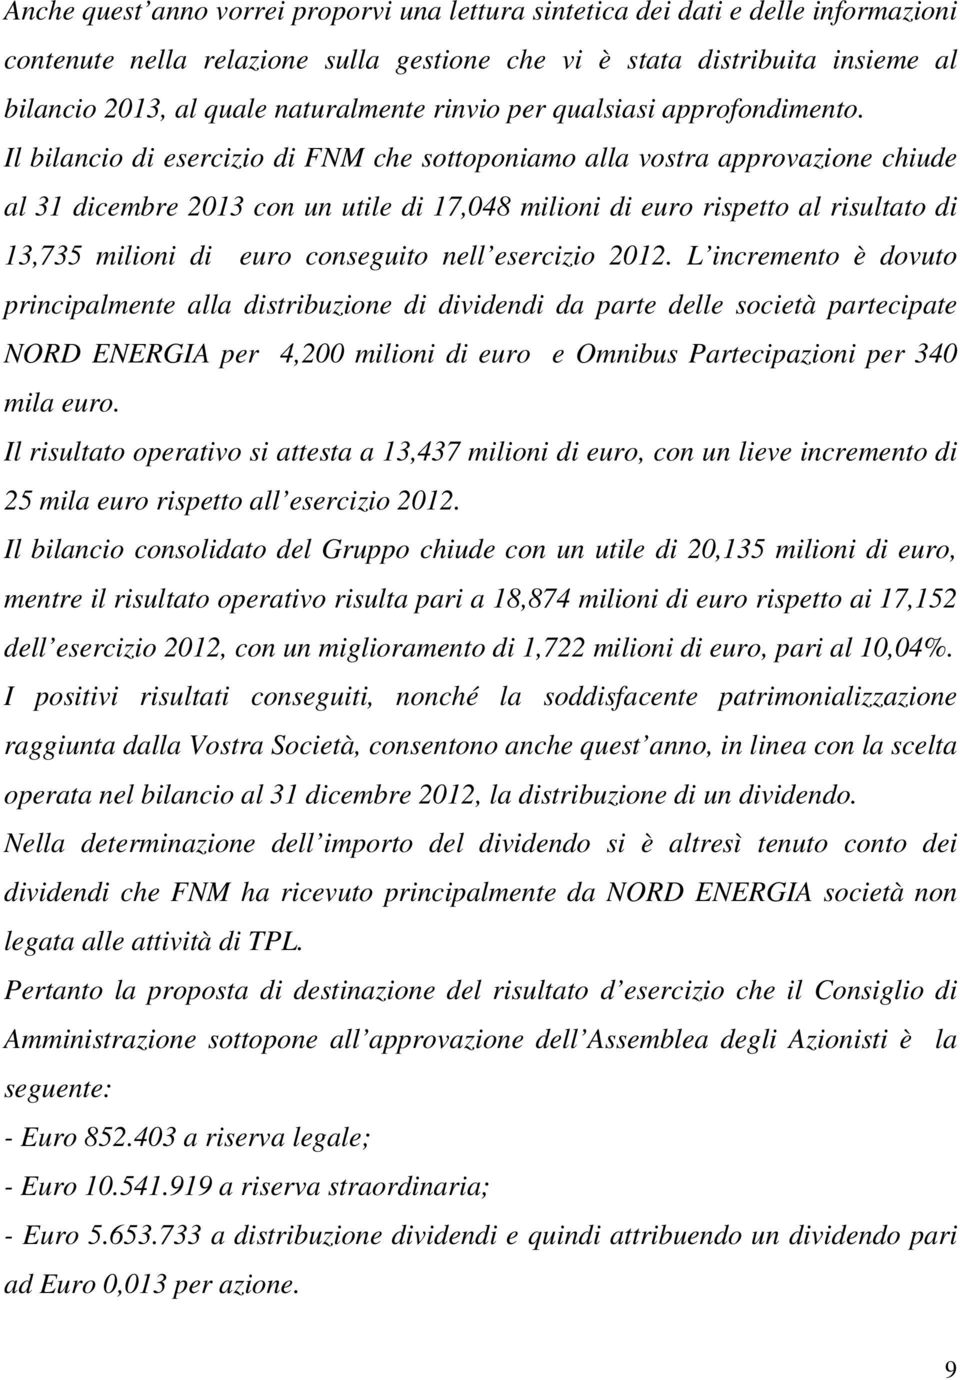 Il bilancio di esercizio di FNM che sottoponiamo alla vostra approvazione chiude al 31 dicembre 2013 con un utile di 17,048 milioni di euro rispetto al risultato di 13,735 milioni di euro conseguito